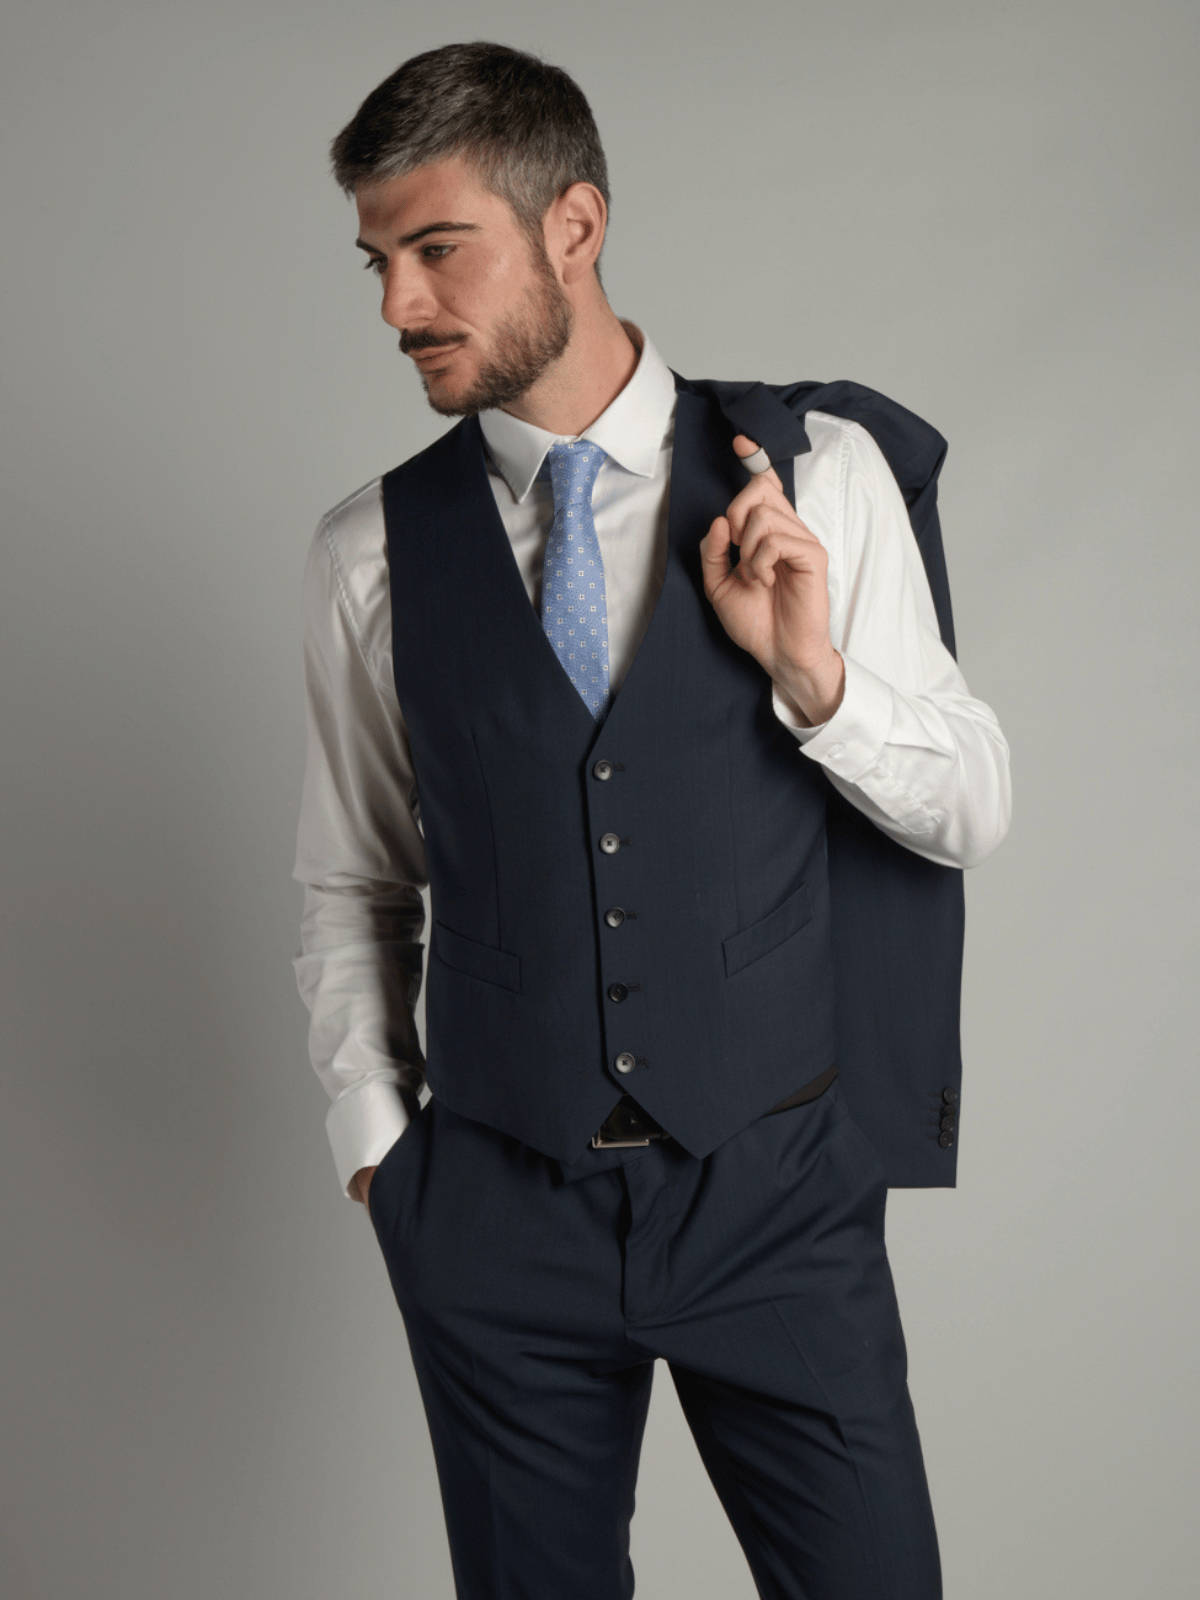 Modello con completo elegante blu, gilet e cravatta